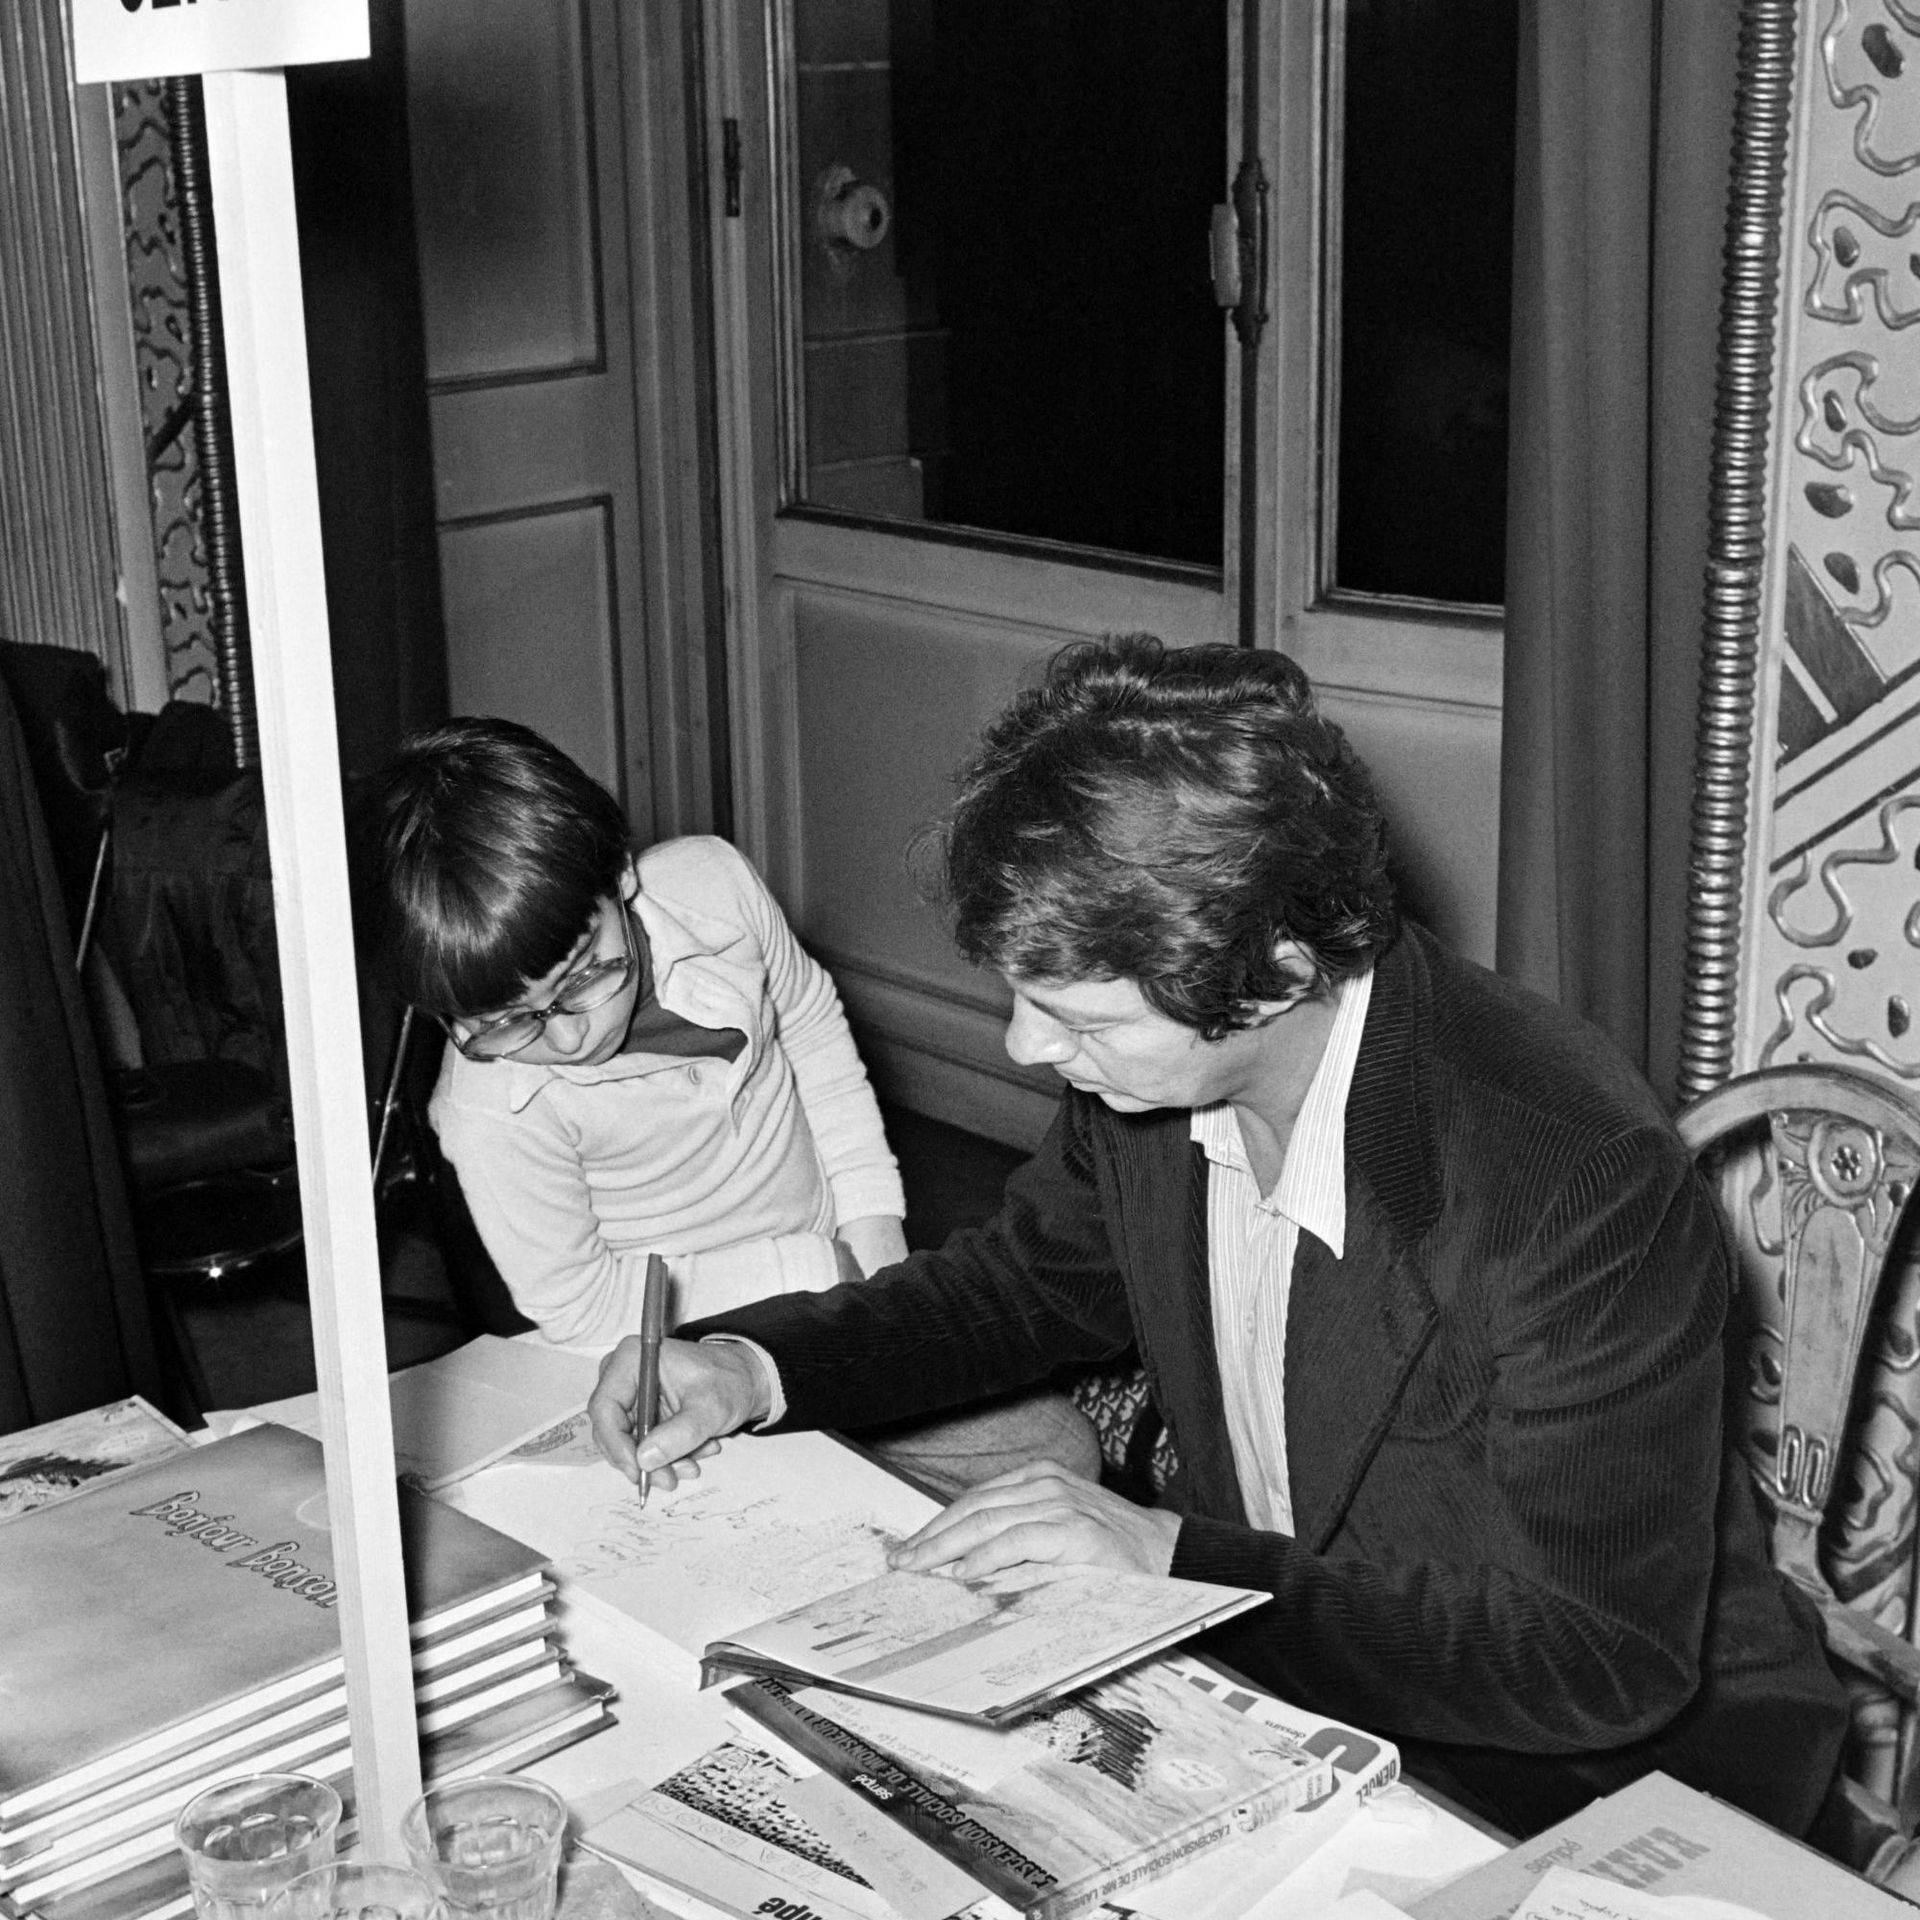 Le dessinateur français Jean-Jacques Sempé, généralement connu sous le nom de Sempé, dédicace un livre à un enfant le 6 décembre 1975.